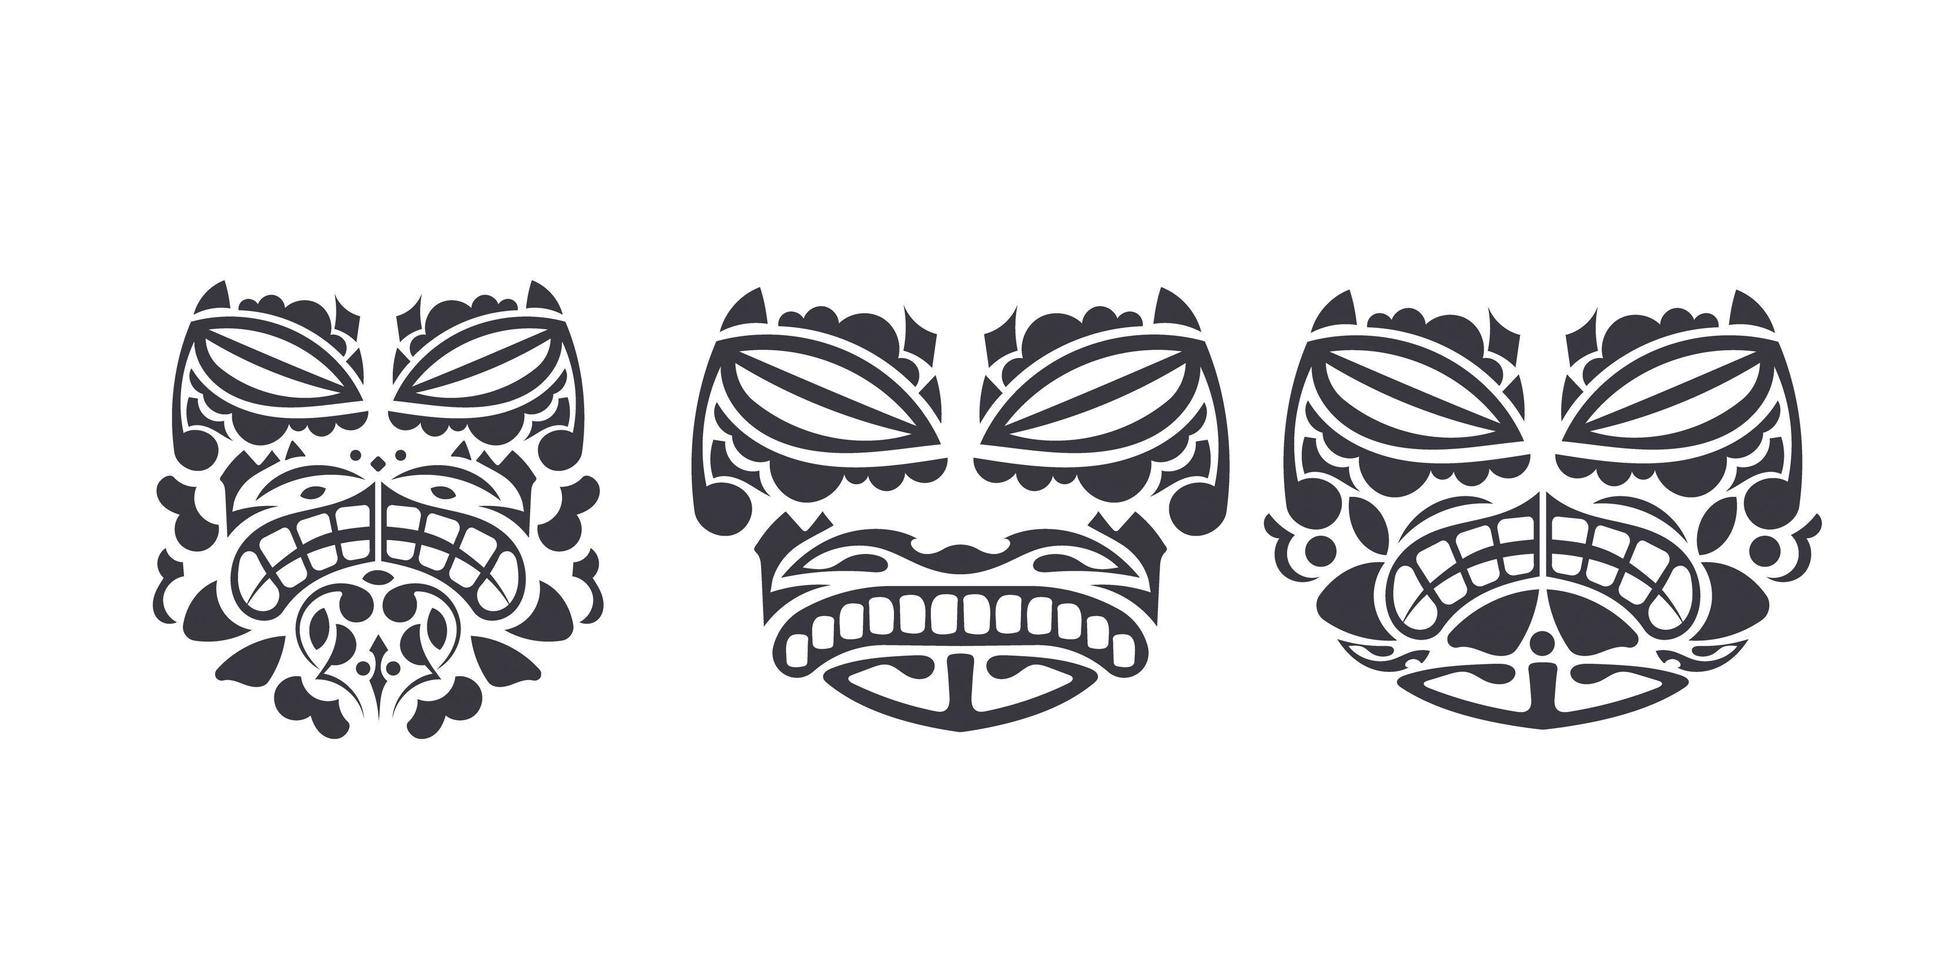 satz masken mit muster der maori- und polynesischen kultur. gesicht tribal polynesischer tätowierungsstil. handgefertigt. Vektor-Illustration. vektor